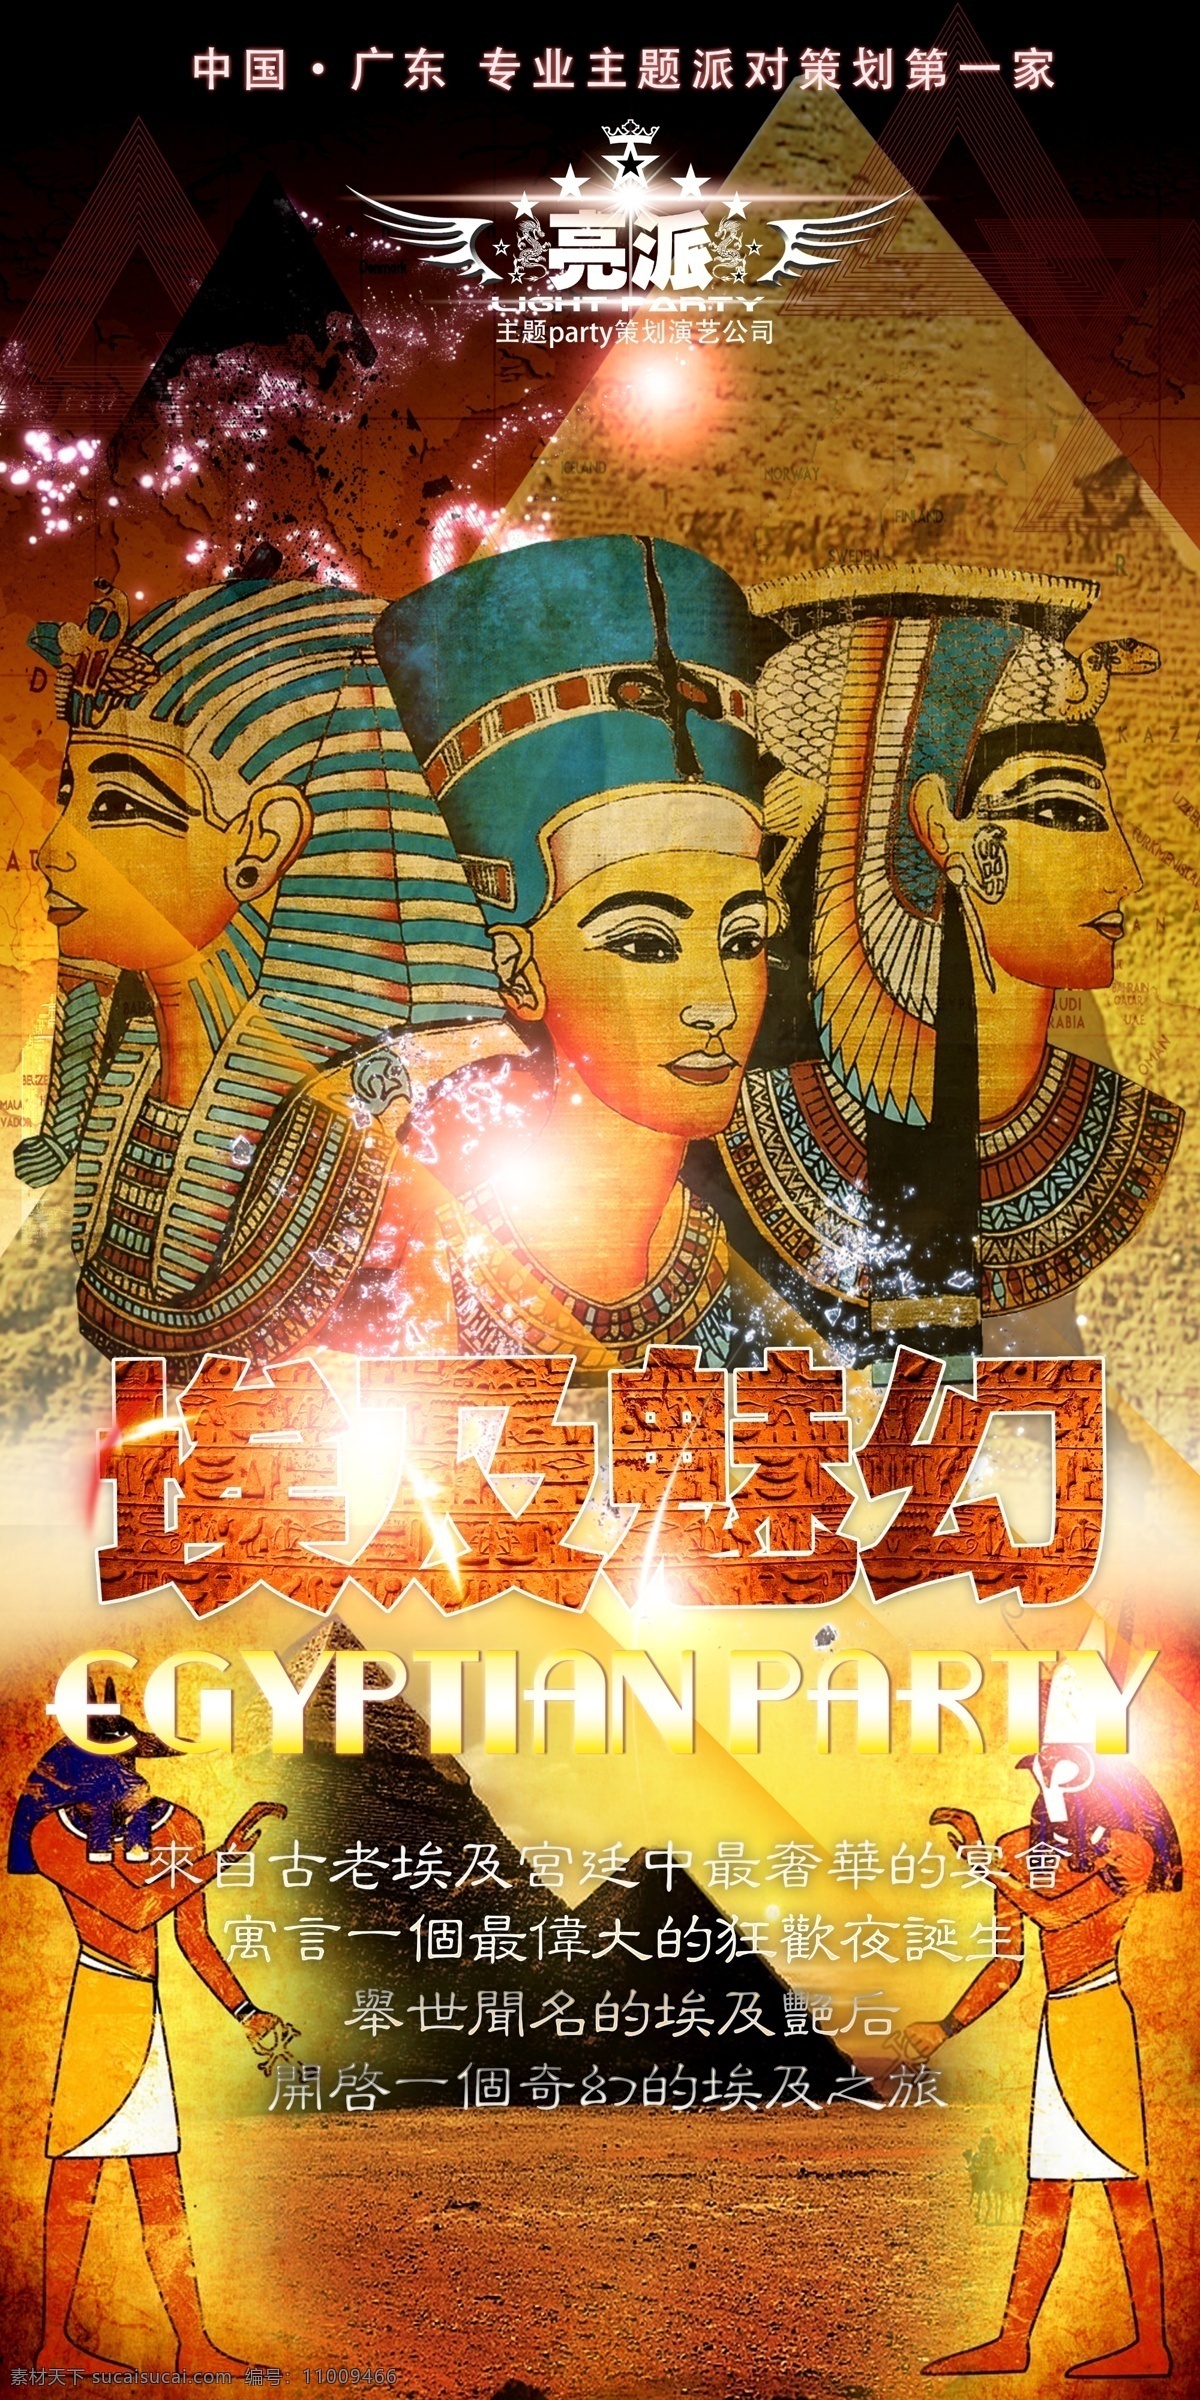 酒吧海报 埃及派对 精灵派对 酒吧派对 酒吧 派对 海报 精灵海报 精灵 埃及 广告设计模板 源文件